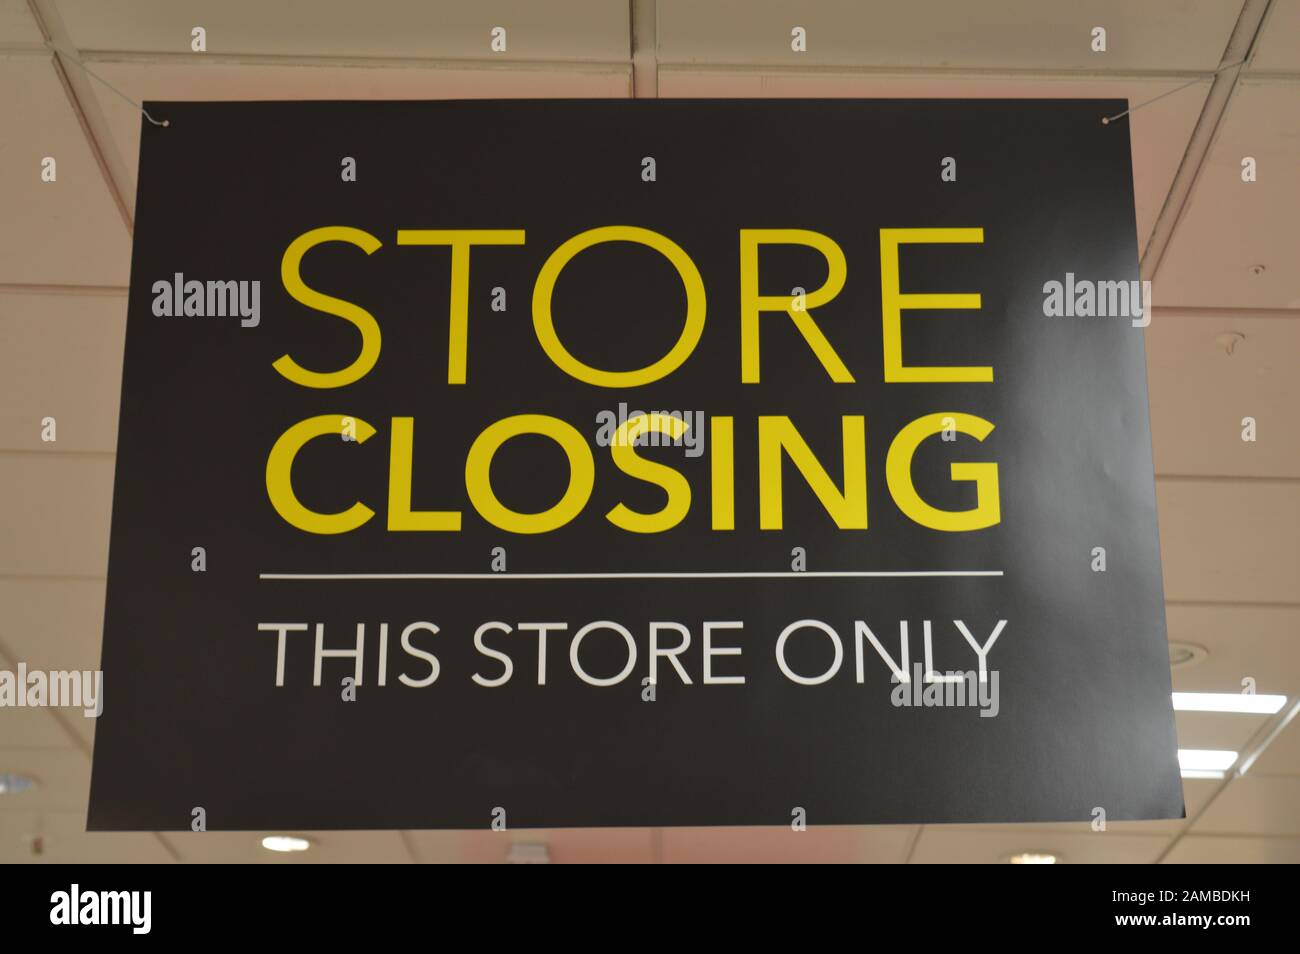 Londres, Royaume-Uni. 12 janvier 2020. Le magasin Debenhams de Wimbledon se prépare à fermer ses magasins. Il s'agit de l'un des 19 magasins Debenhams dont la fermeture a été confirmée en 2020. Banque D'Images